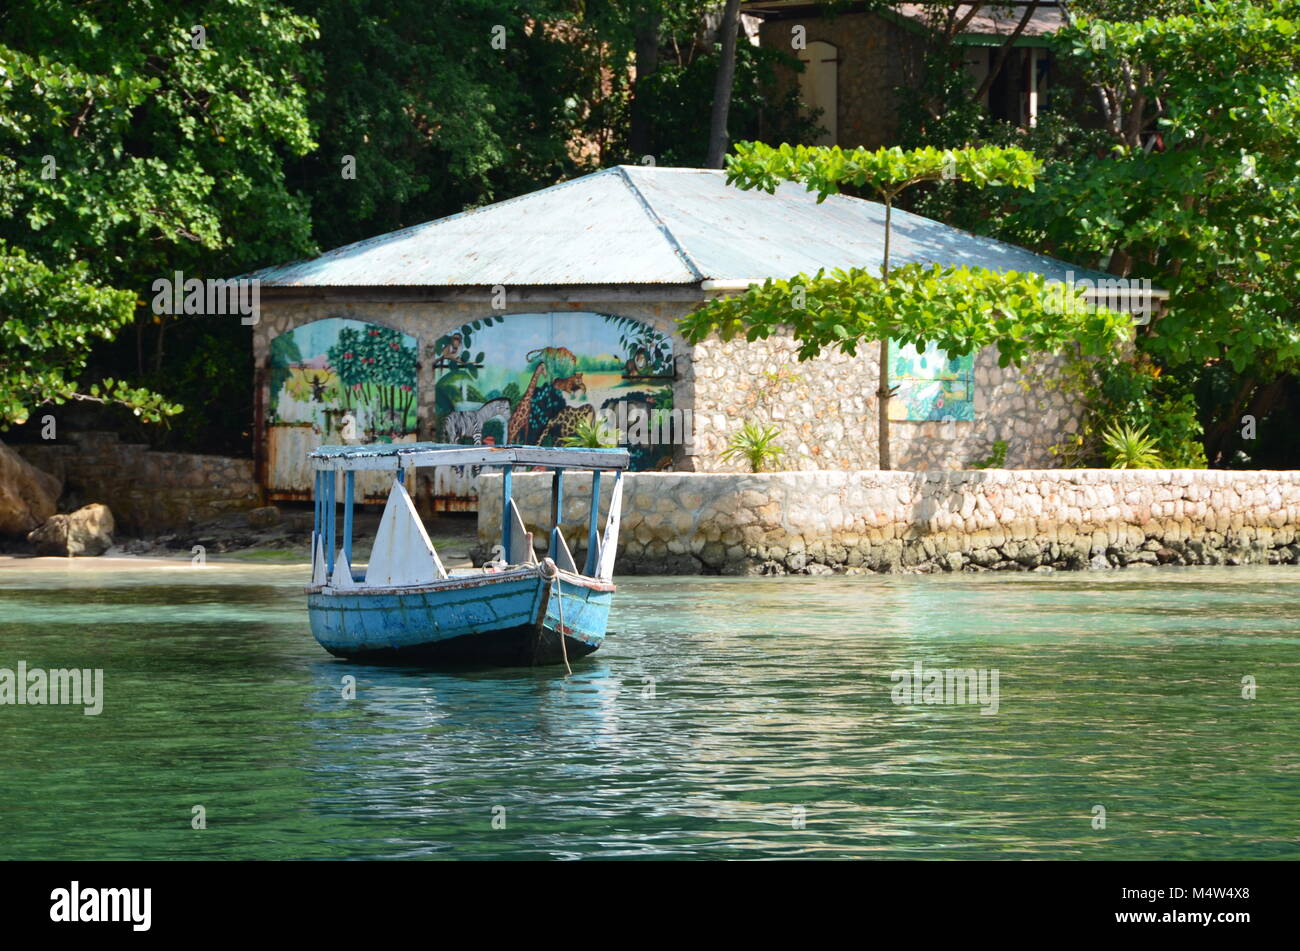 Labadee, Haiti. Villaggio haitiano esperienza escursione passa in legno tradizionale barca a remi e costruzione in pietra con dipinto murale. Foto Stock